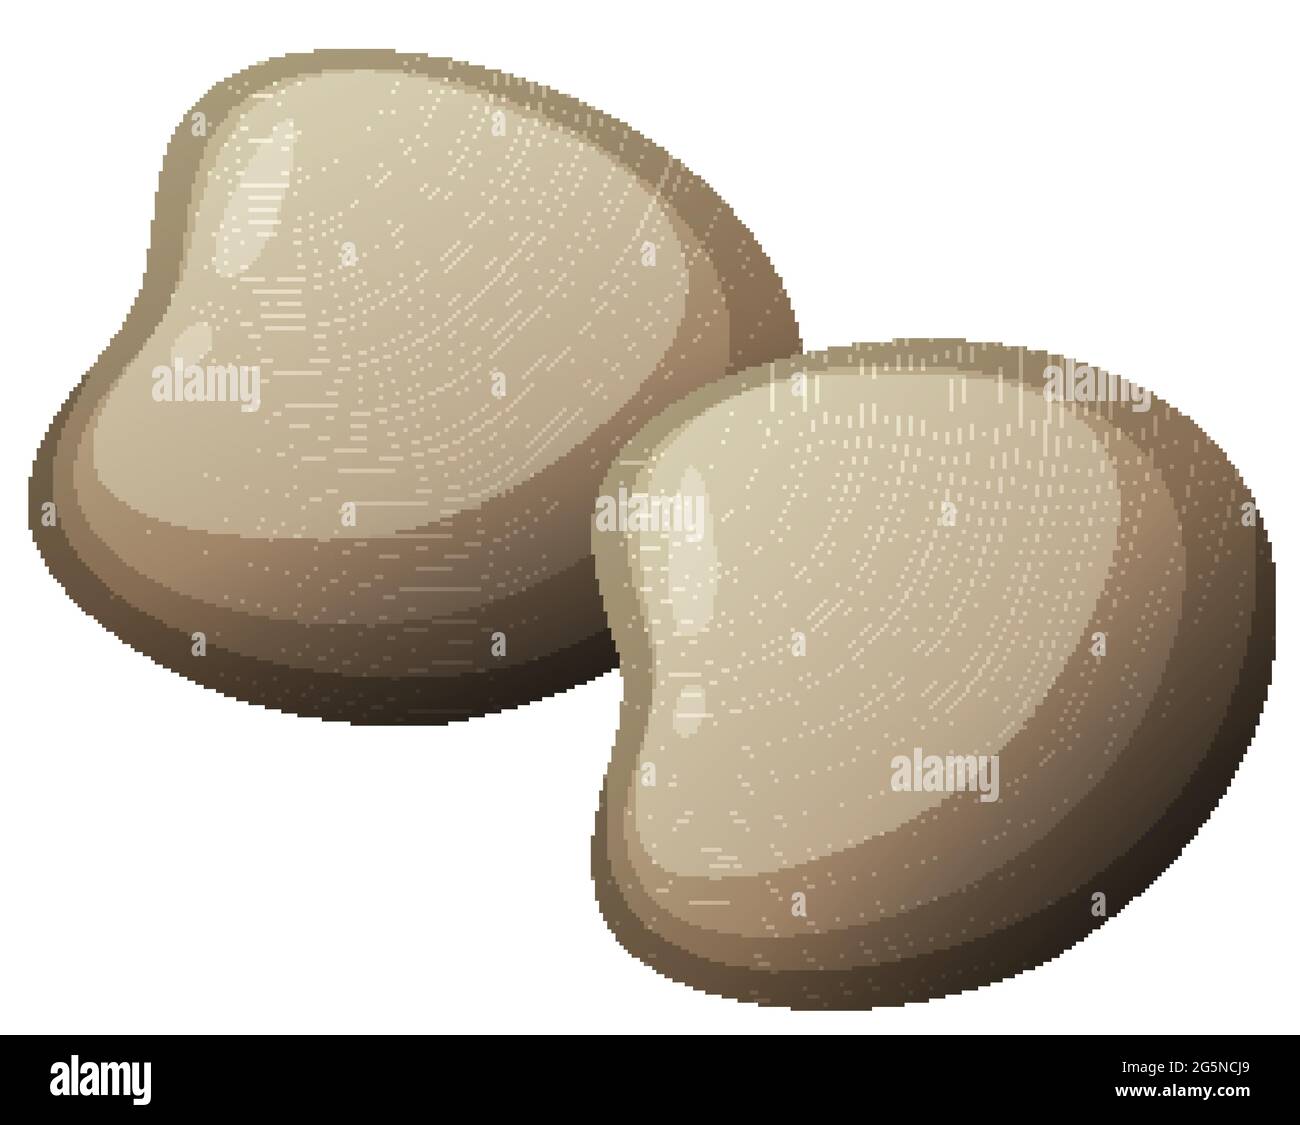 Harte Muschel oder Auster im Cartoon-Stil auf weißem Hintergrund Illustration Stock Vektor